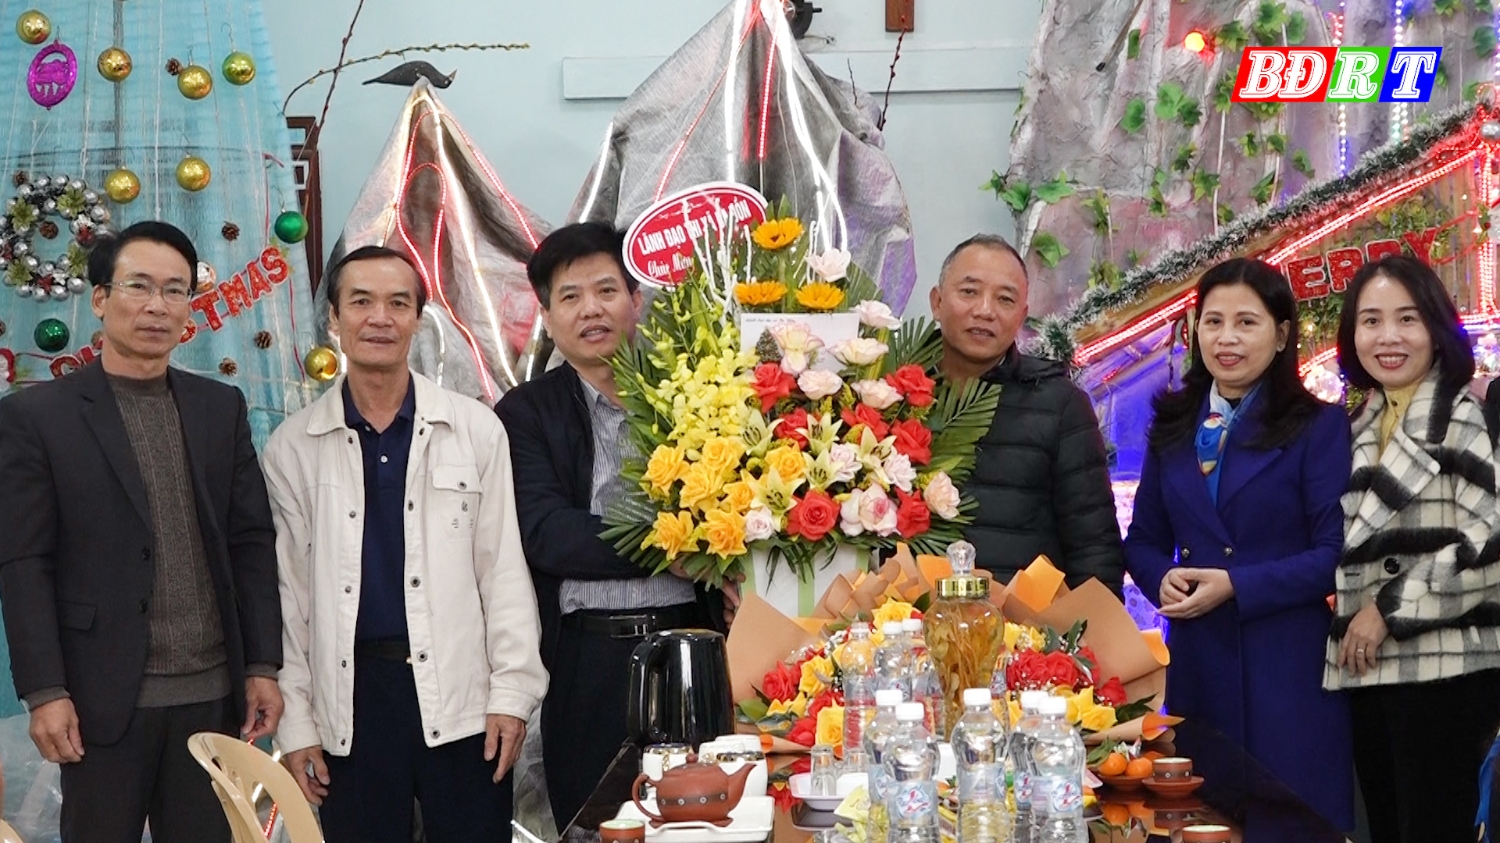 Đồng chí Trần Thanh Hưng - Trưởng Ban dân vận Thị uỷ thăm, tặng quà Giáo xứ Cồn Sẻ.